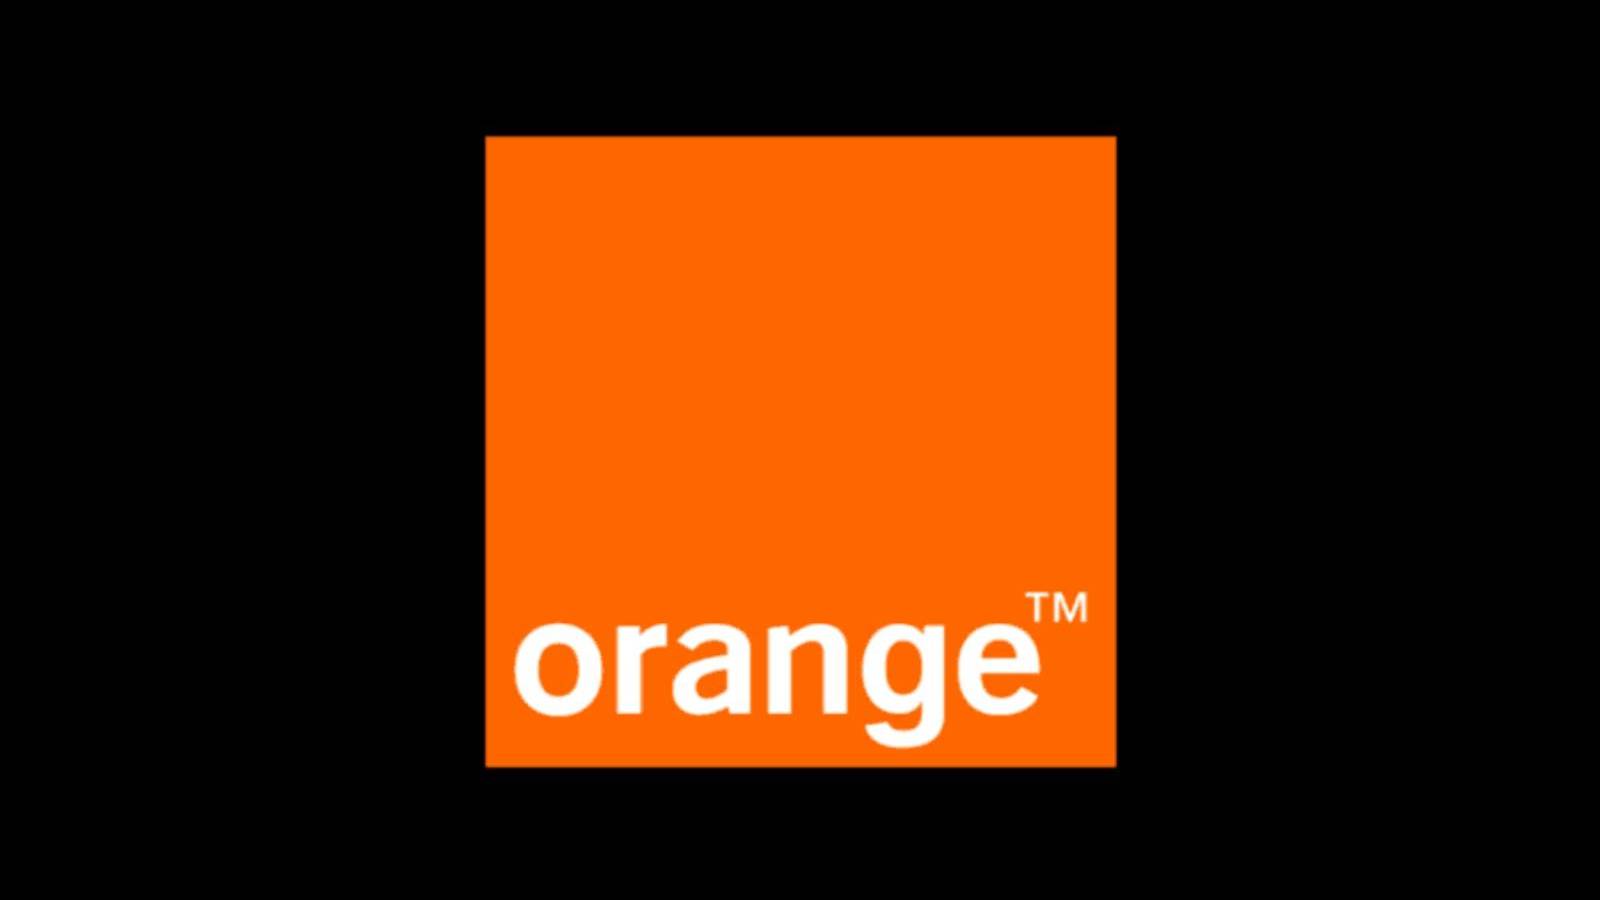 Orange tarjoaa ilmaista rahaa asiakkaille, jotka sinun on saatava